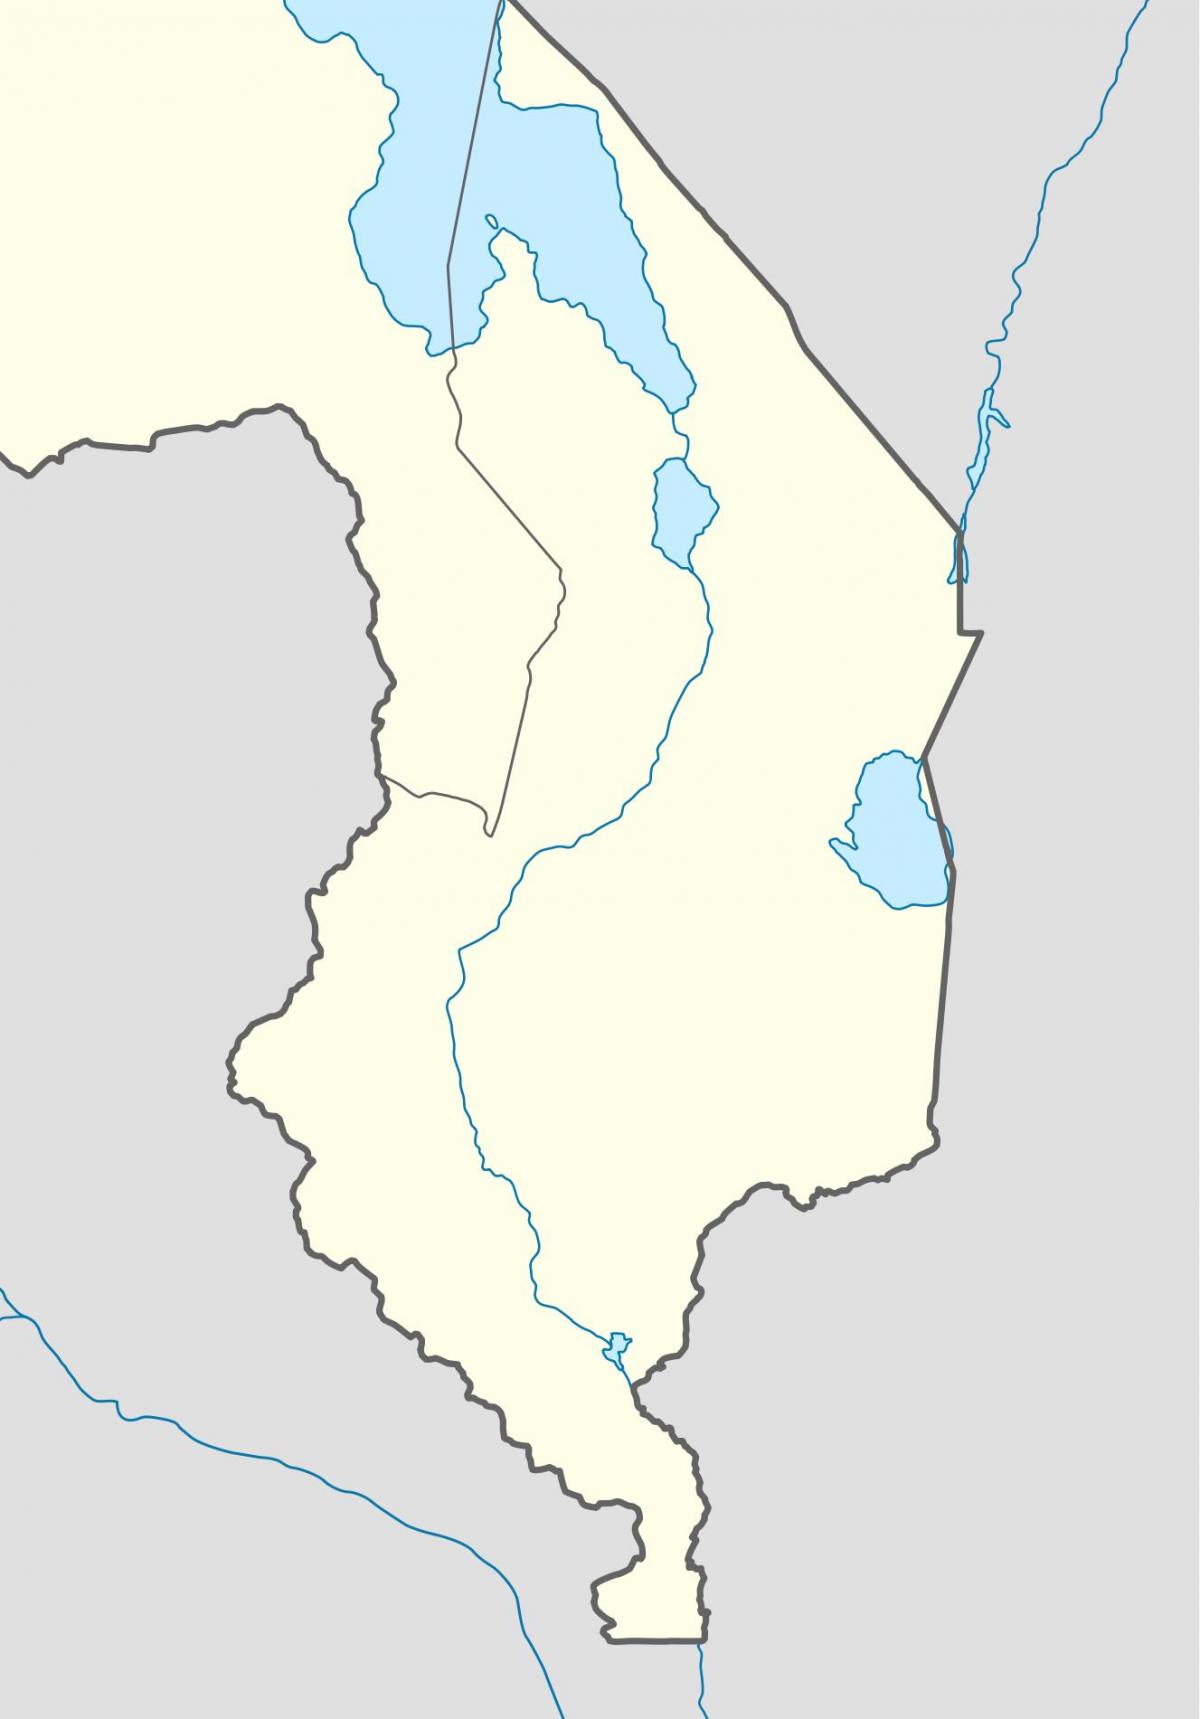 kort over Malawi-floden